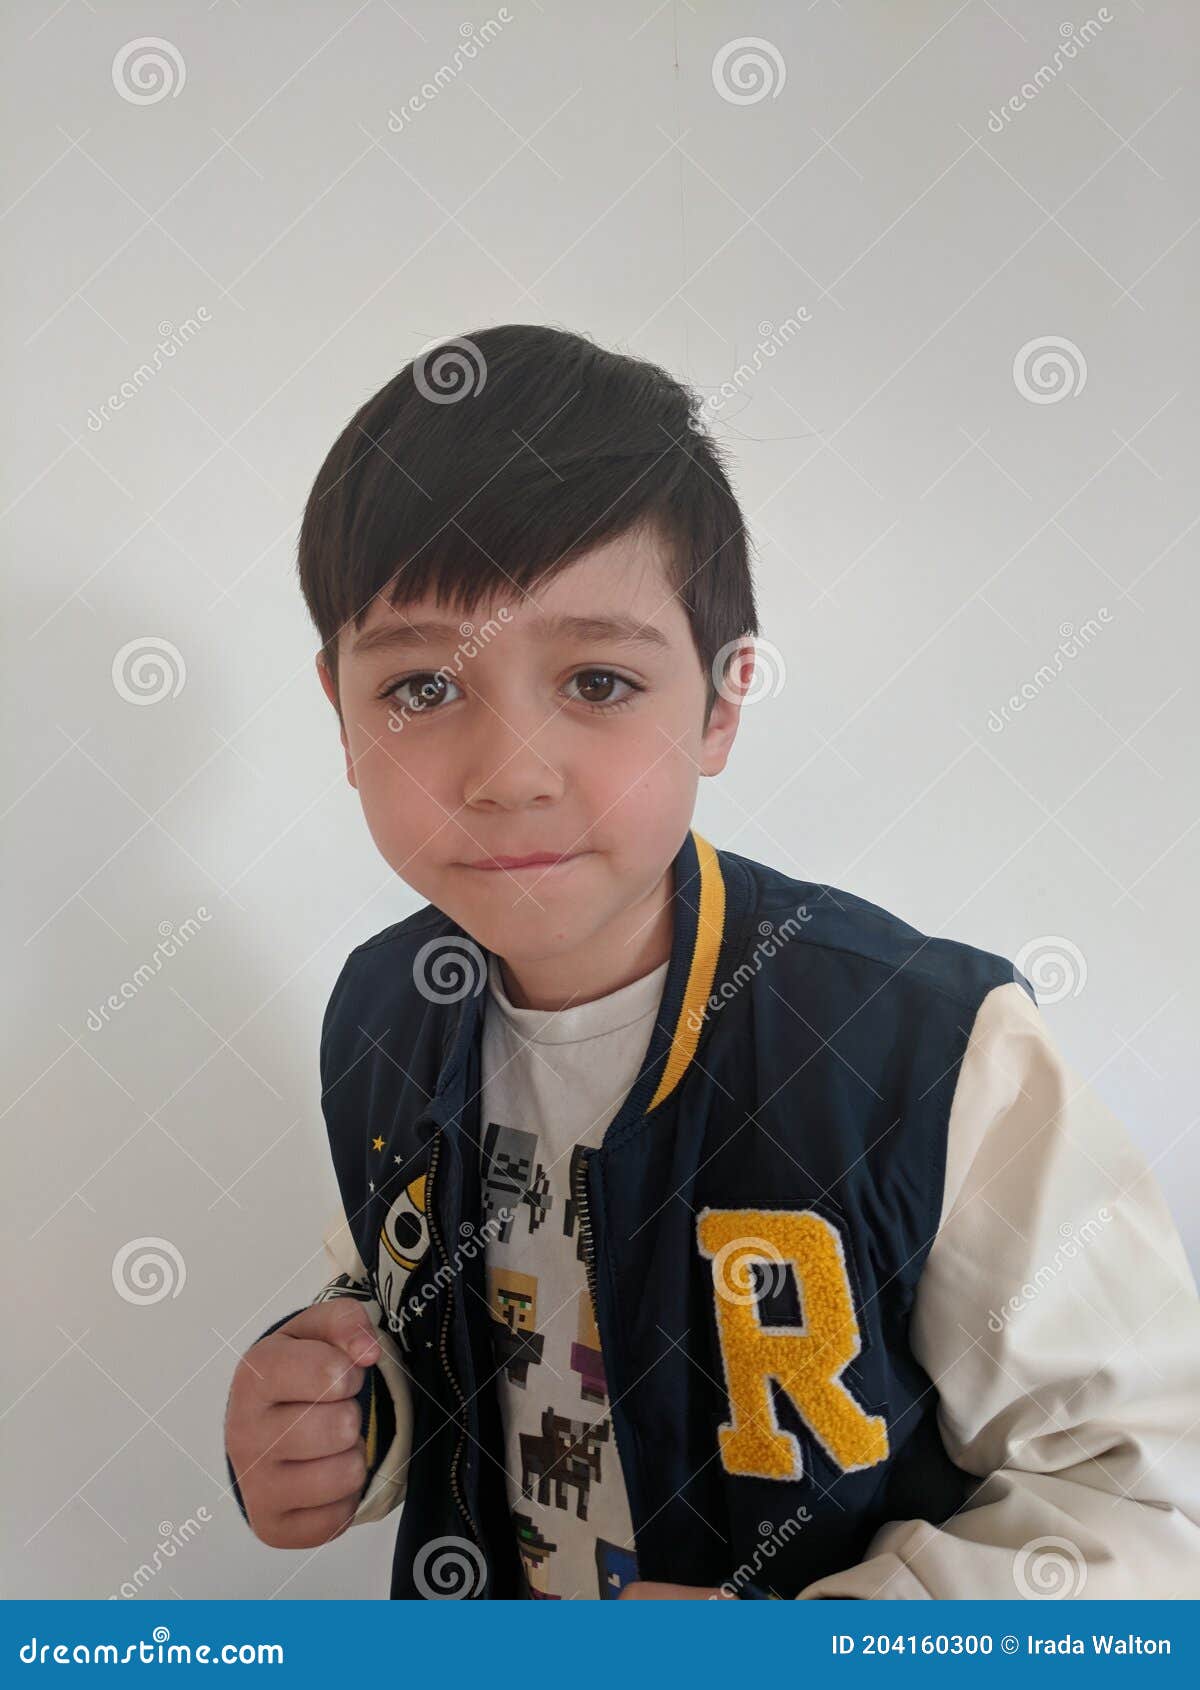 Un Niño Pequeño Con Una Chaqueta Azul Blanca Con Una Postura De Lucha Foto de archivo - Imagen de cabrito, gente: 204160300